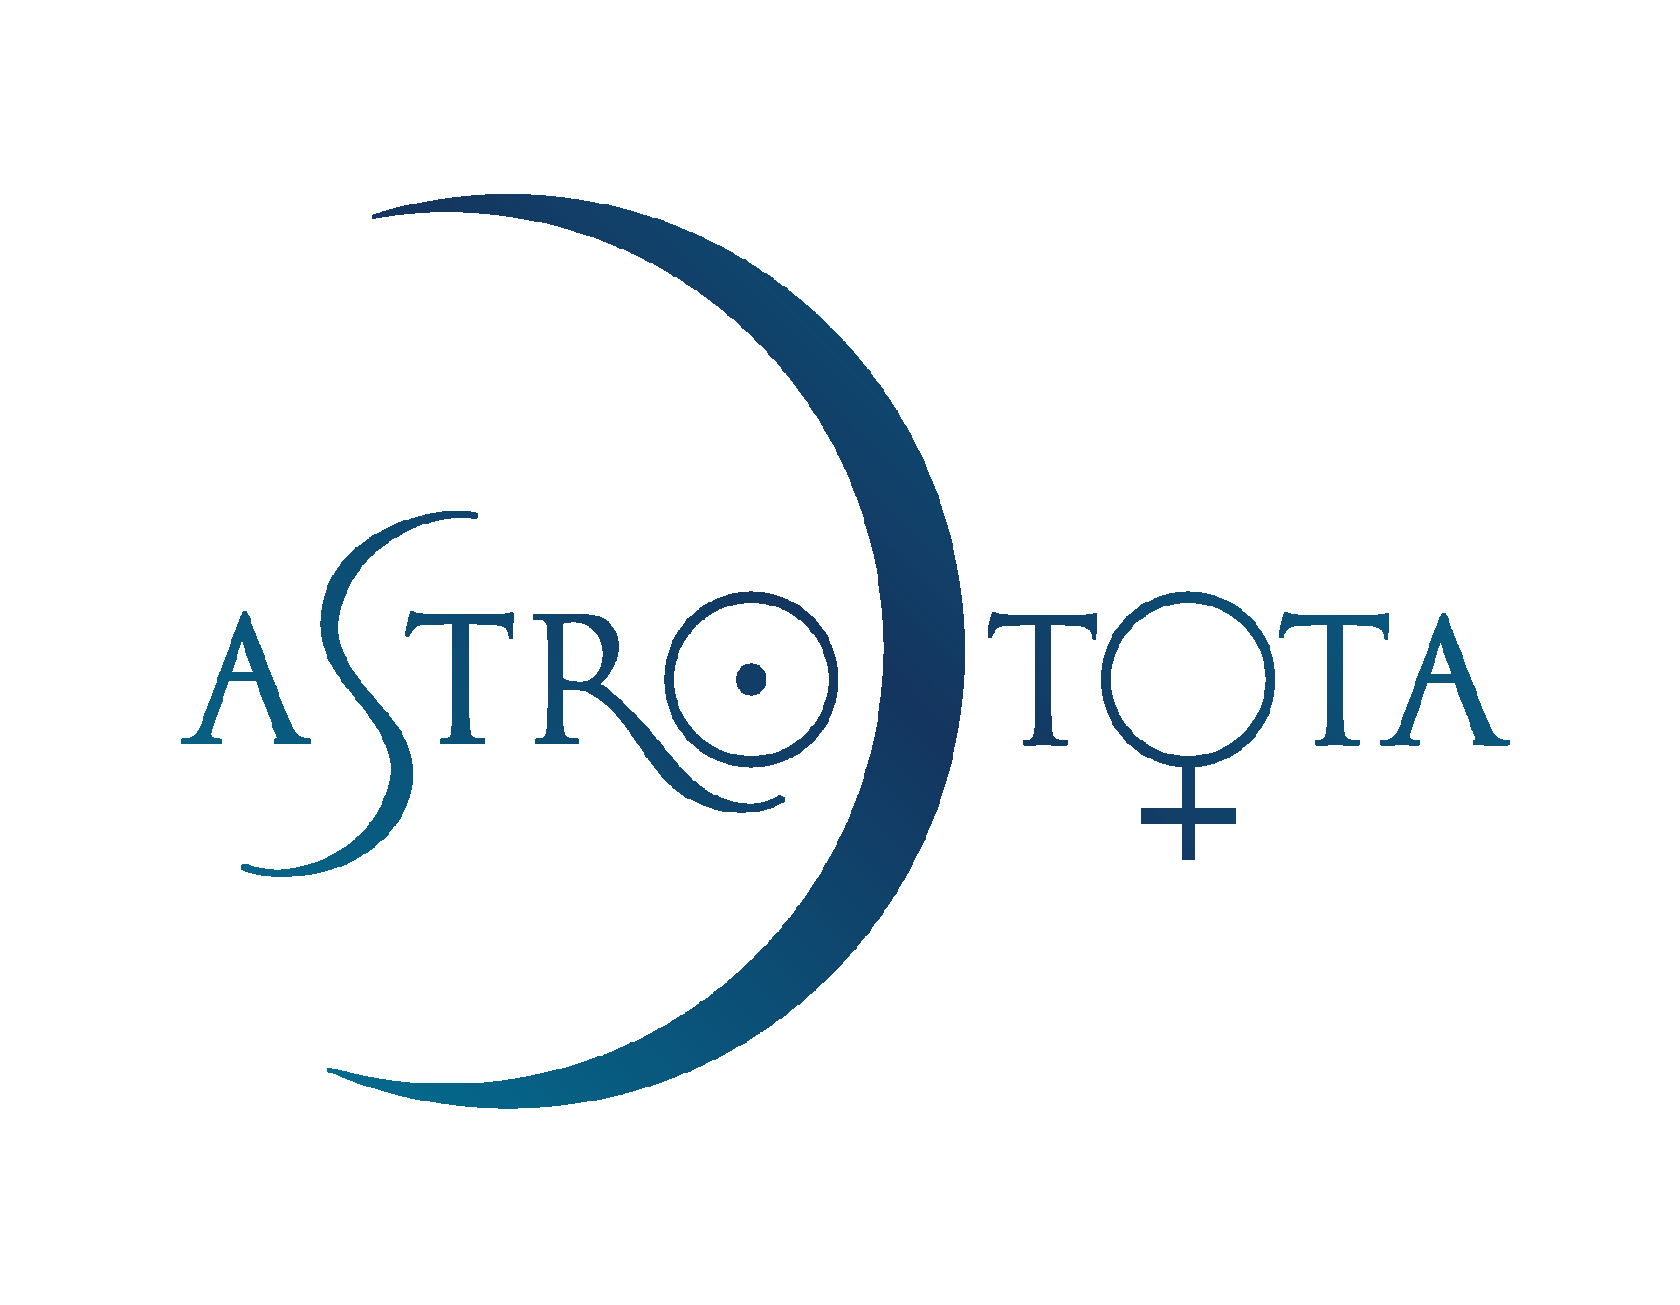 Astro_Tota